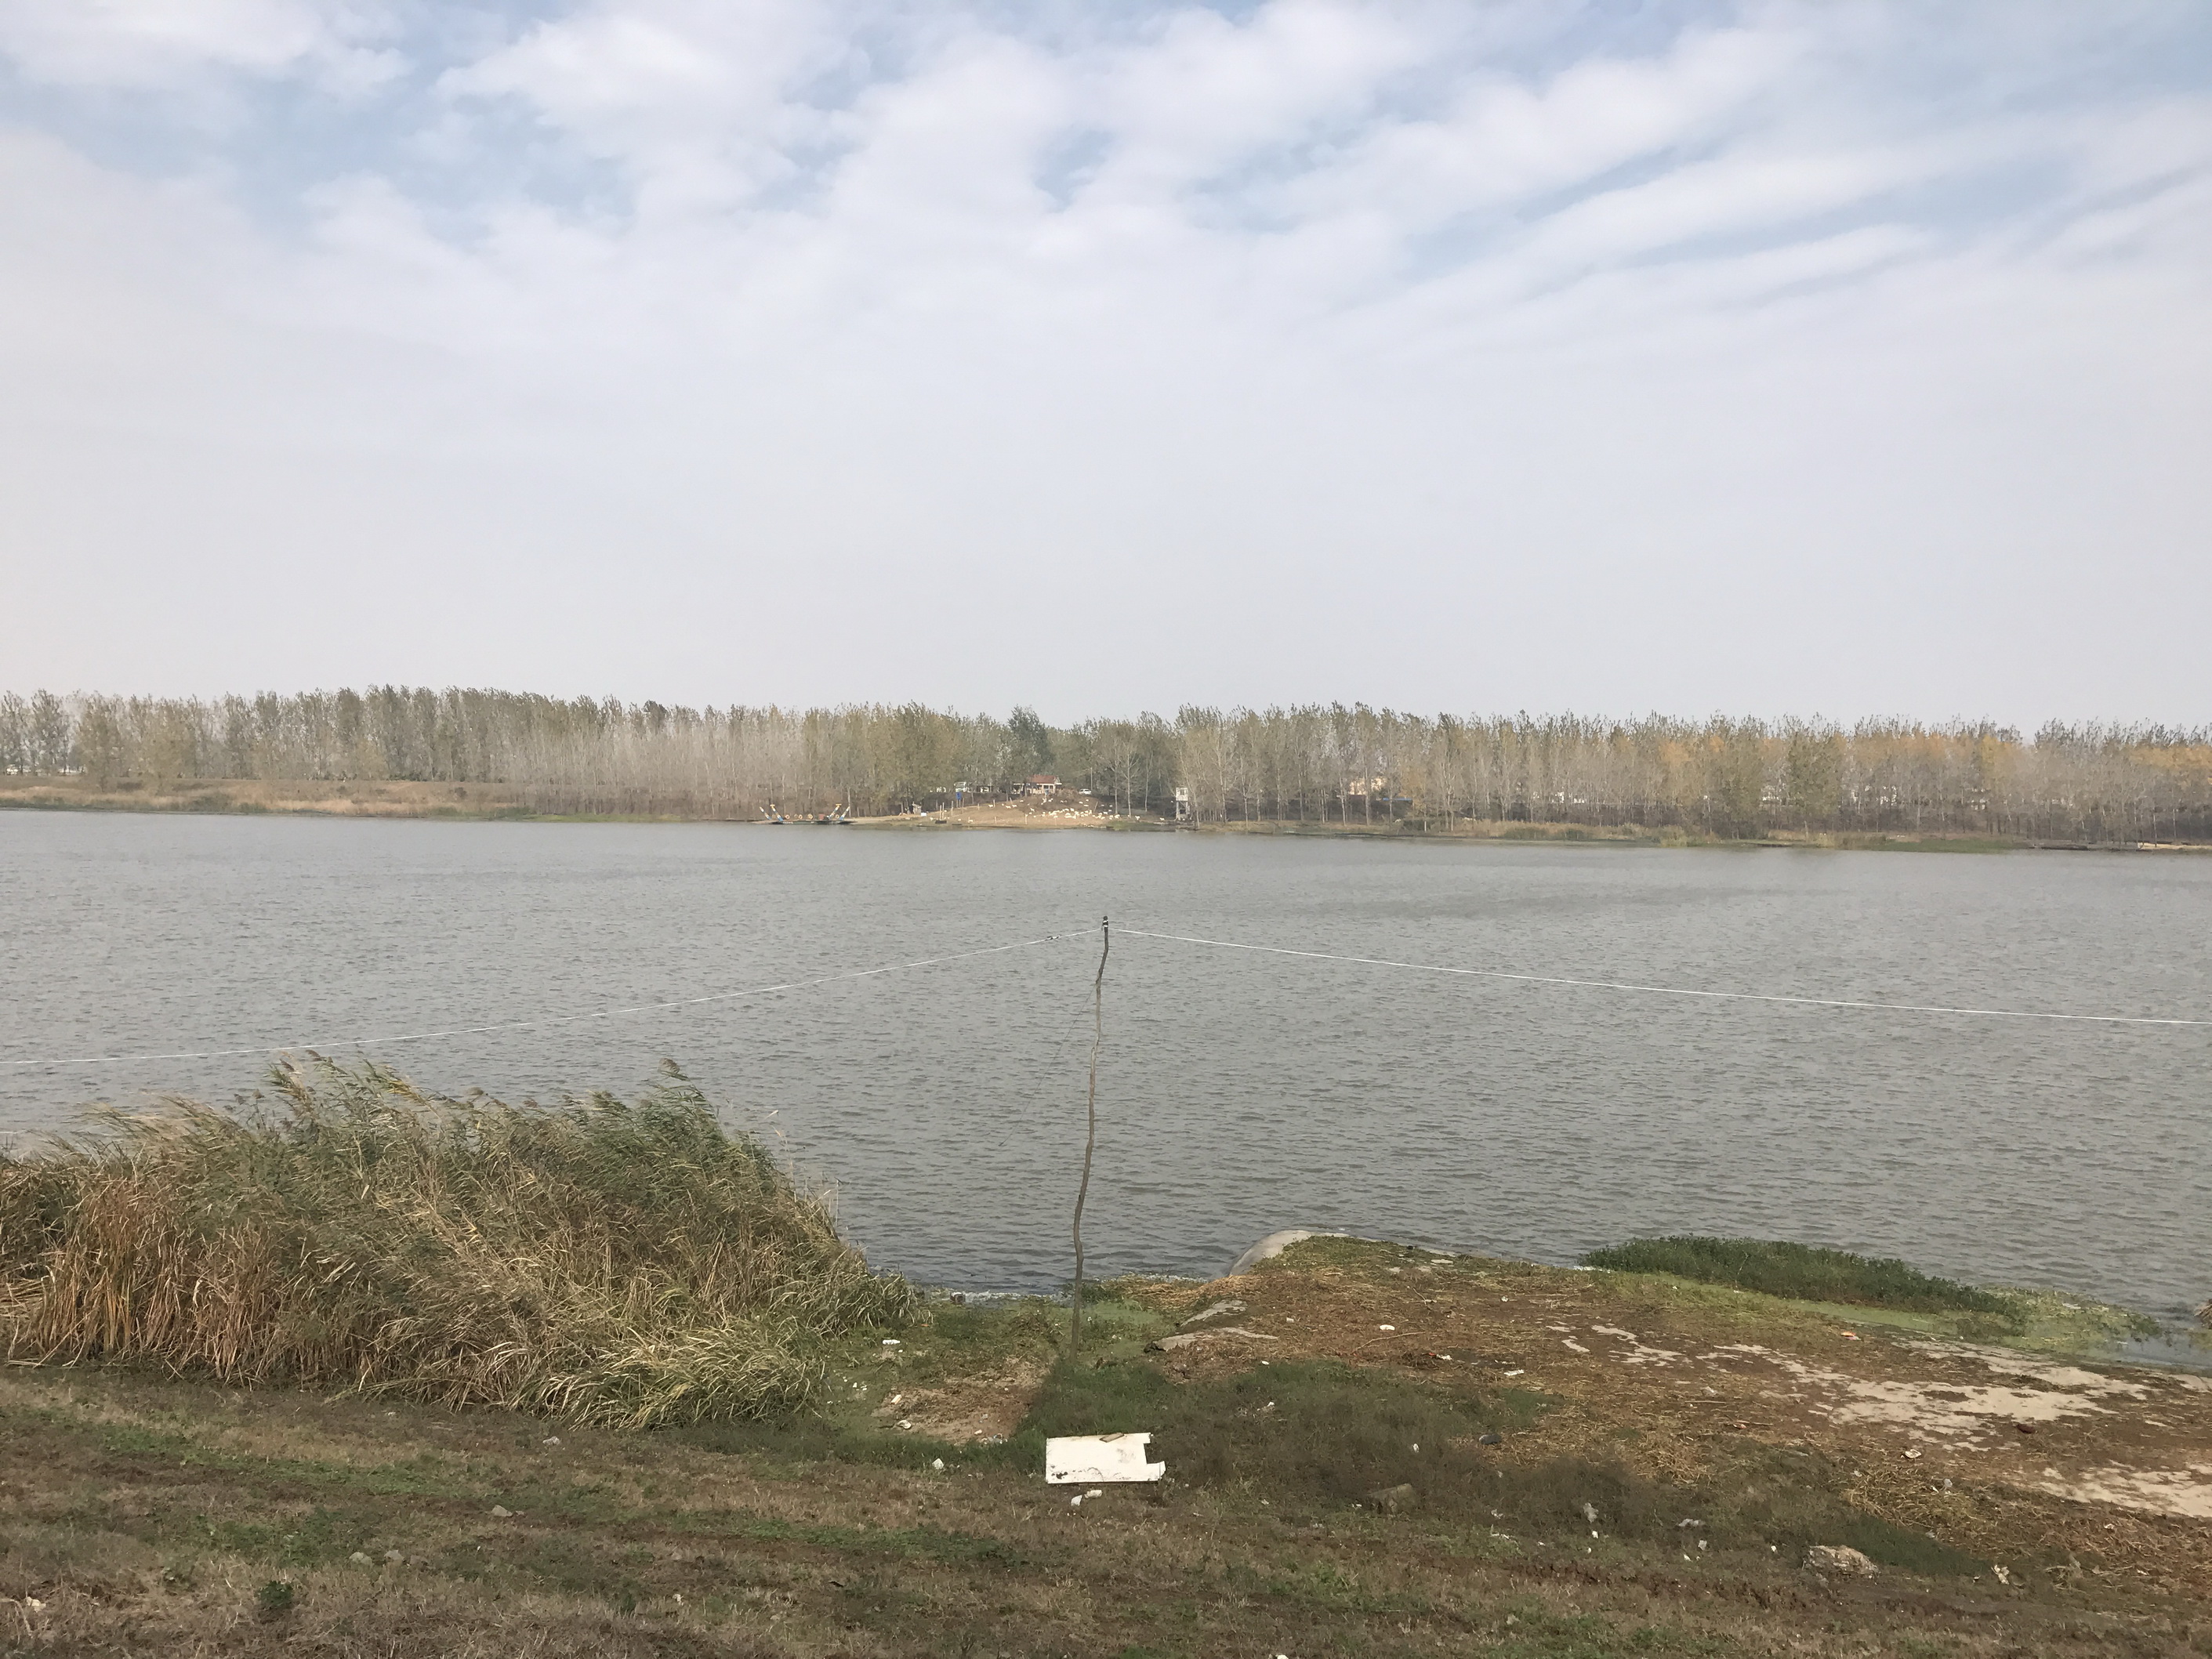 香涧湖